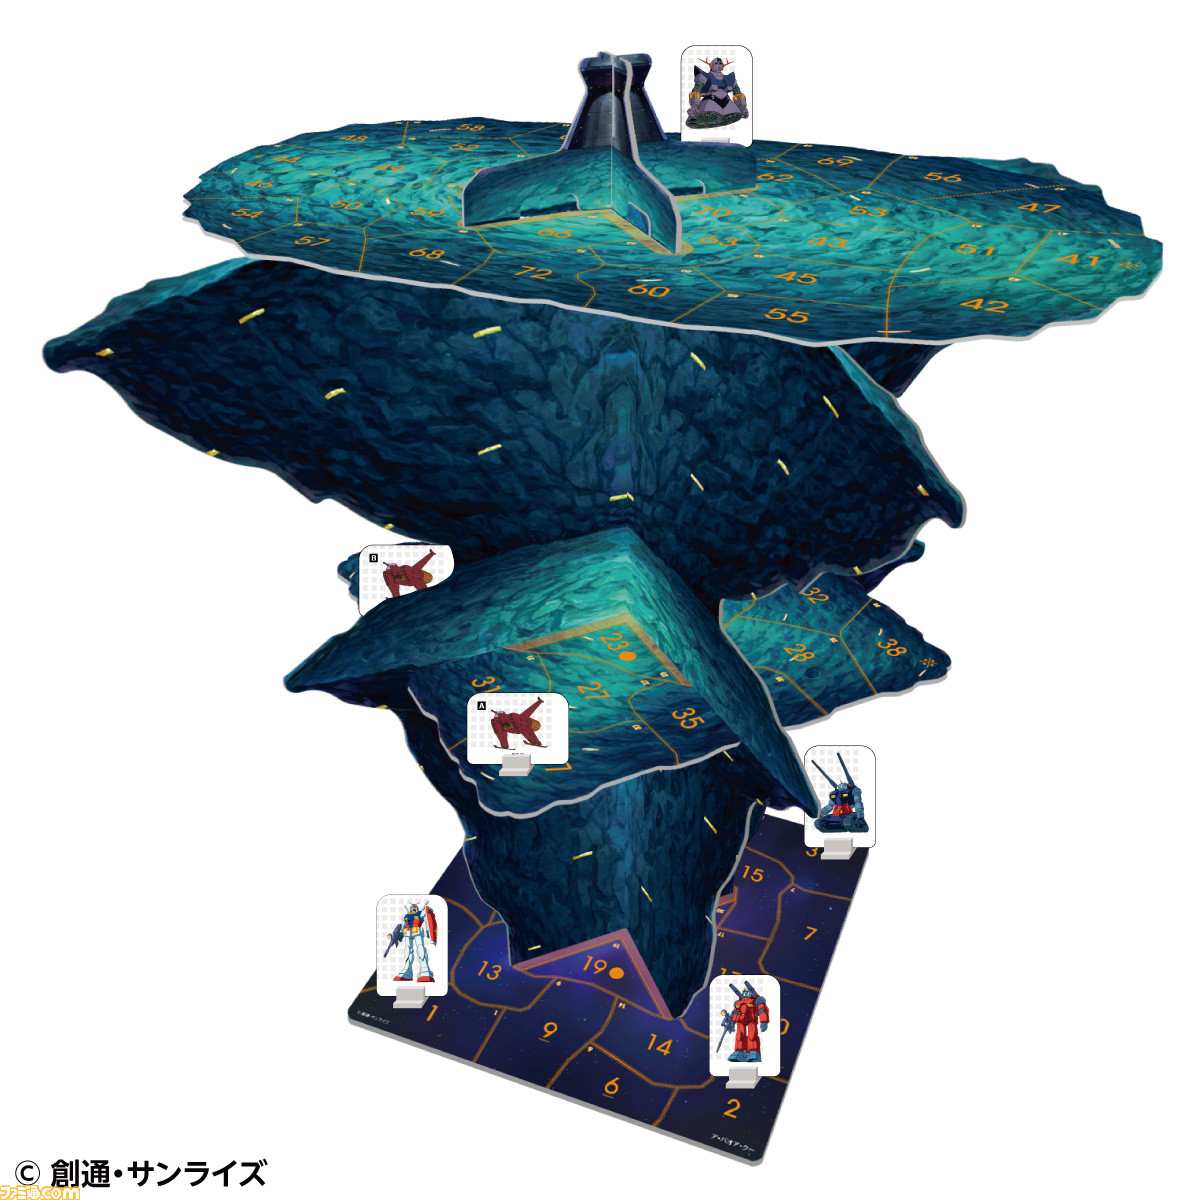 アニメ 機動戦士ガンダム 新作ボードゲームが予約受付開始 全高約40cmのア バオア クーが出現 ファミ通 Com